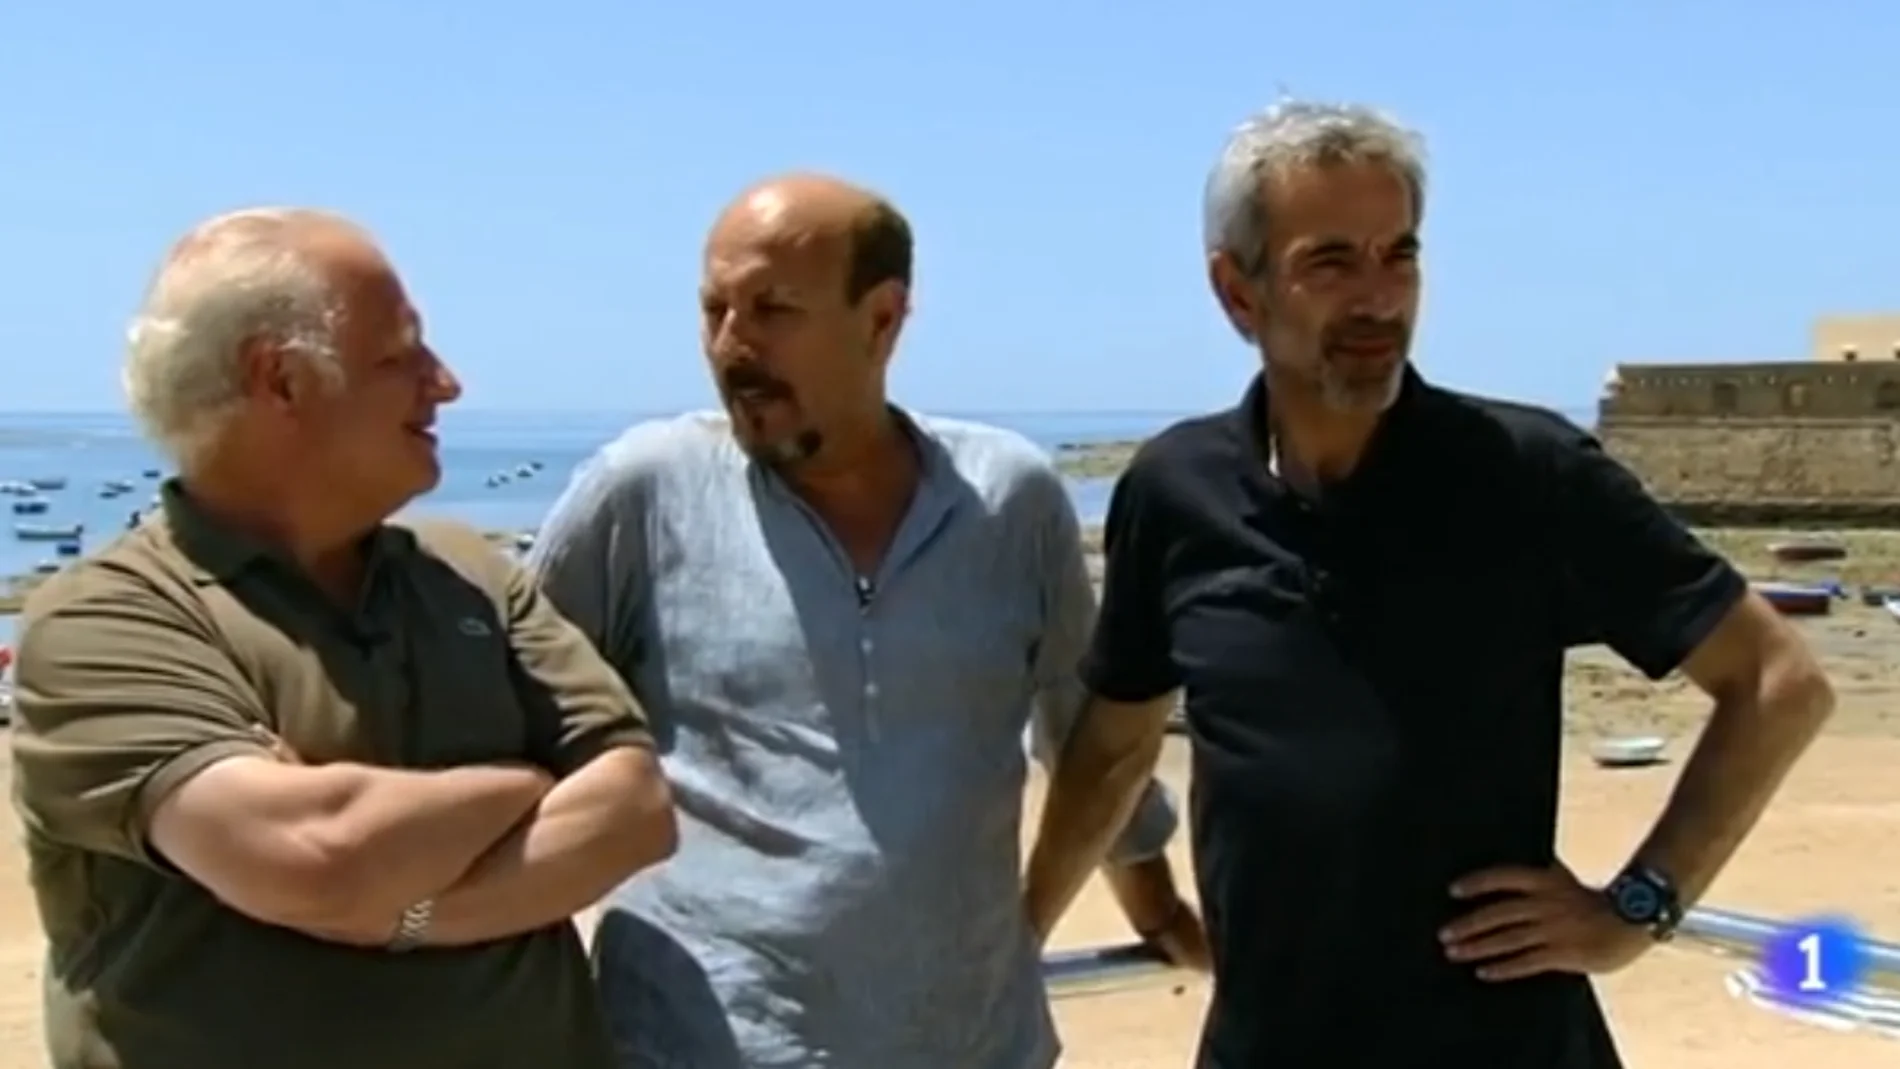 Juan Echanove e Imanol Arias flanquean a Javier Ruibal ante la playa de La Caleta de Cádiz